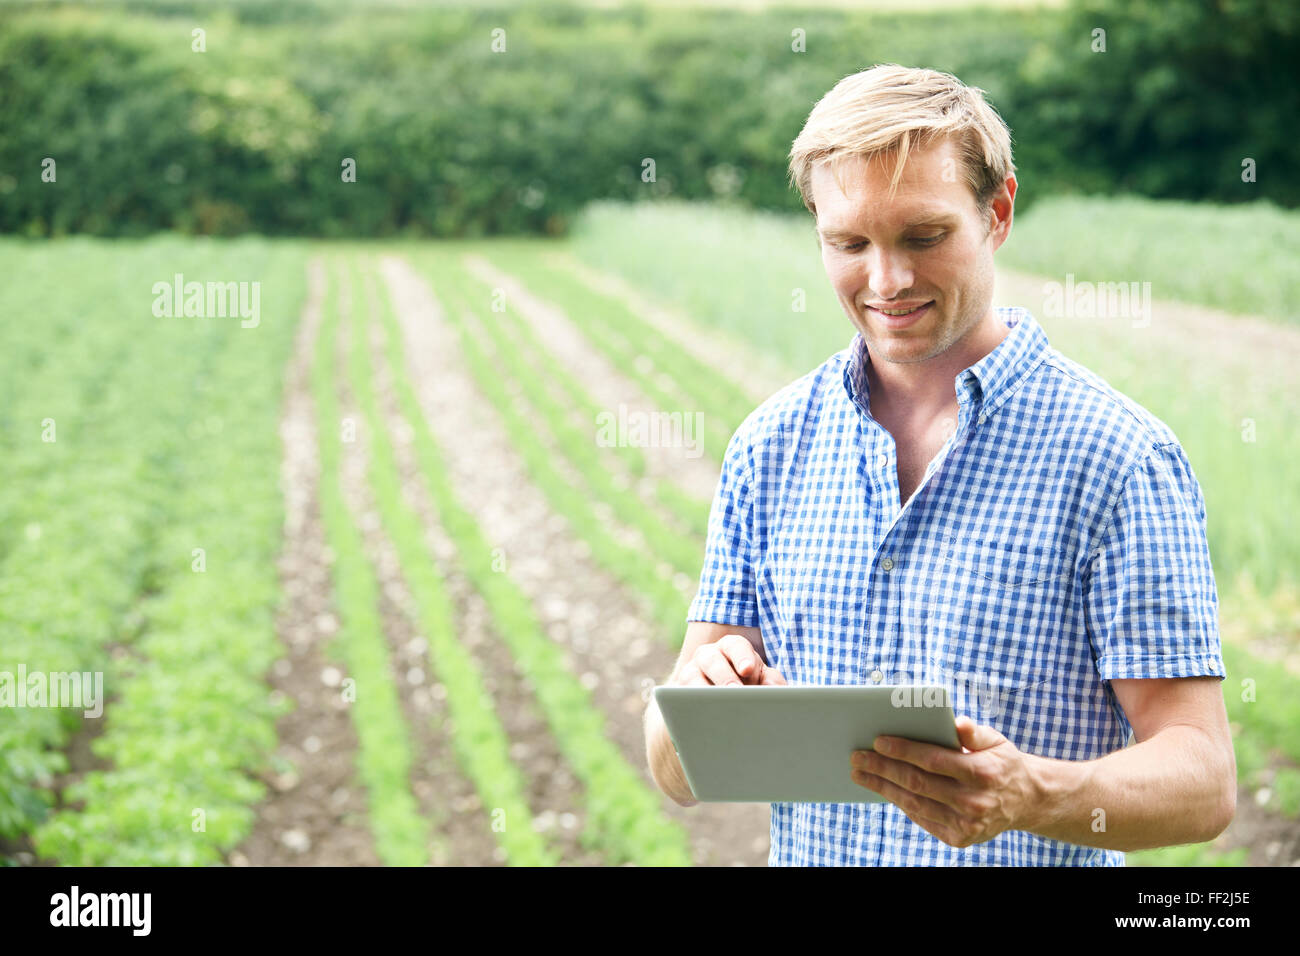 Agricoltore in azienda agricola biologica con tavoletta digitale Foto Stock